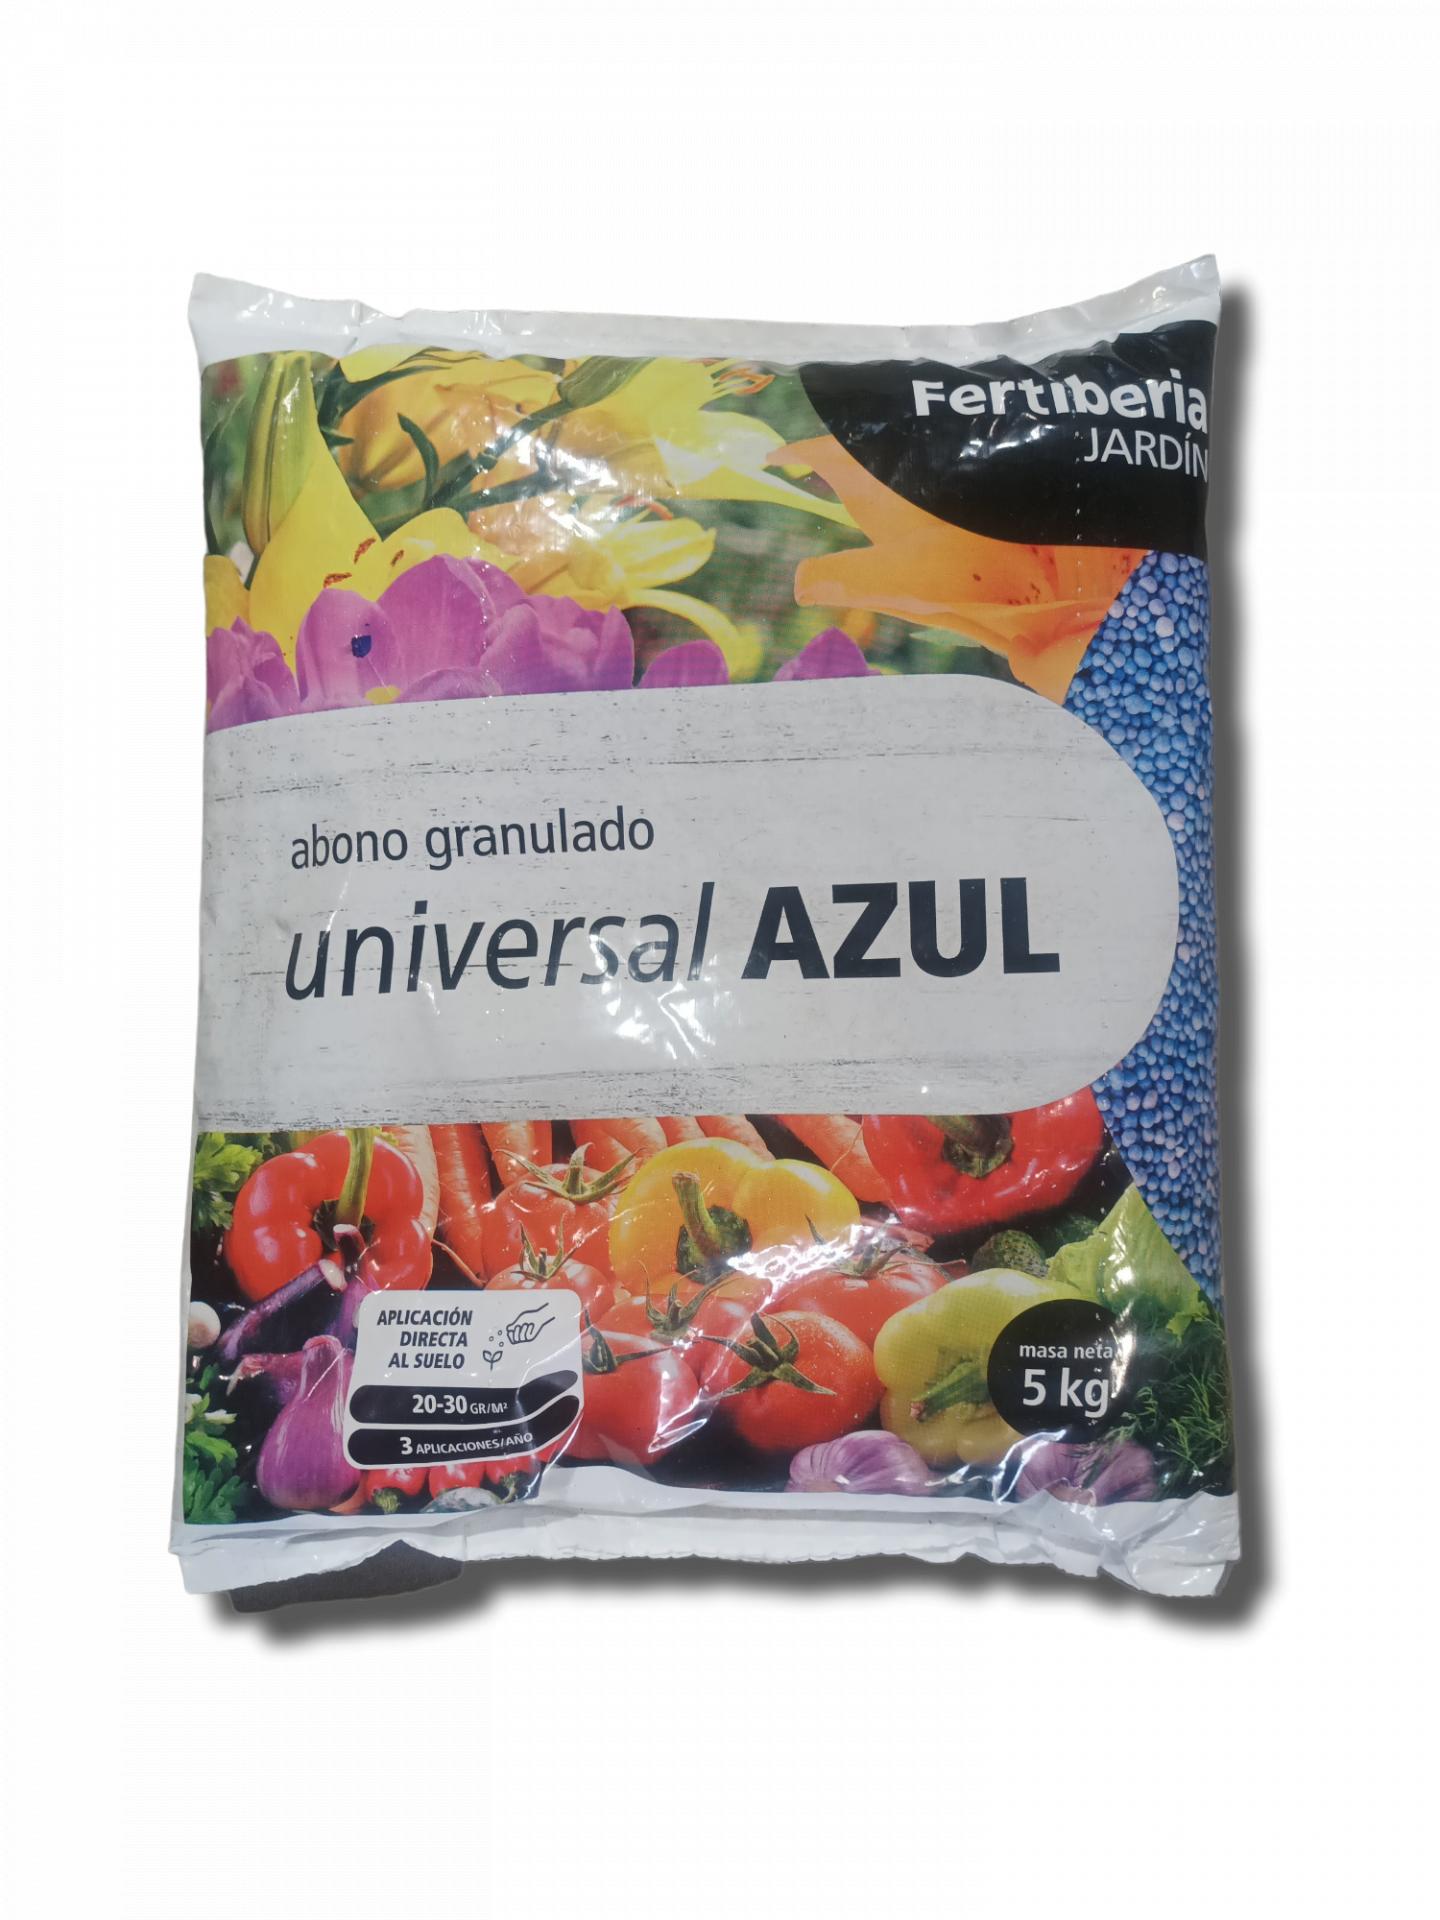  Abono granulado FERTIBERIA UNIVERSAL AZUL para todo tipo de plantas. 5 kgs.